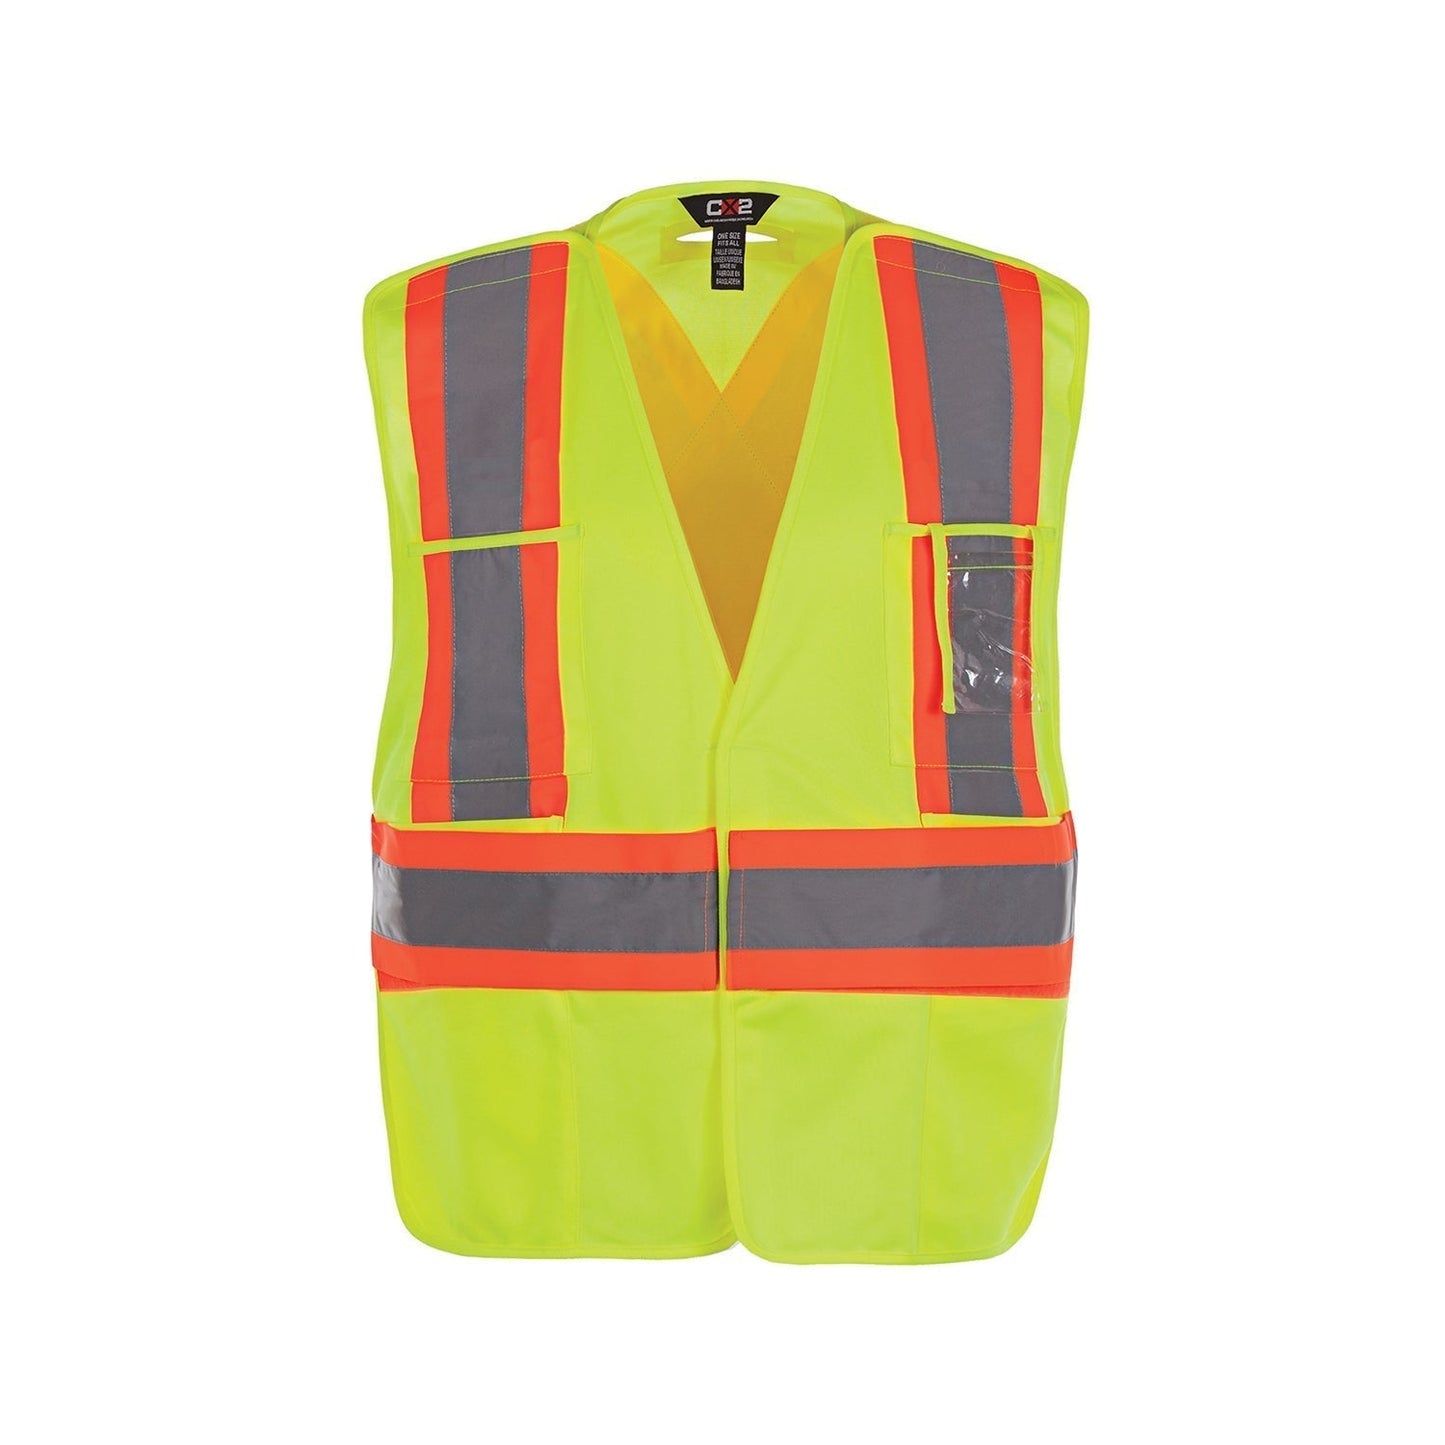 L01170 - Protector Adult One Size Hi - Vis Safety Vest